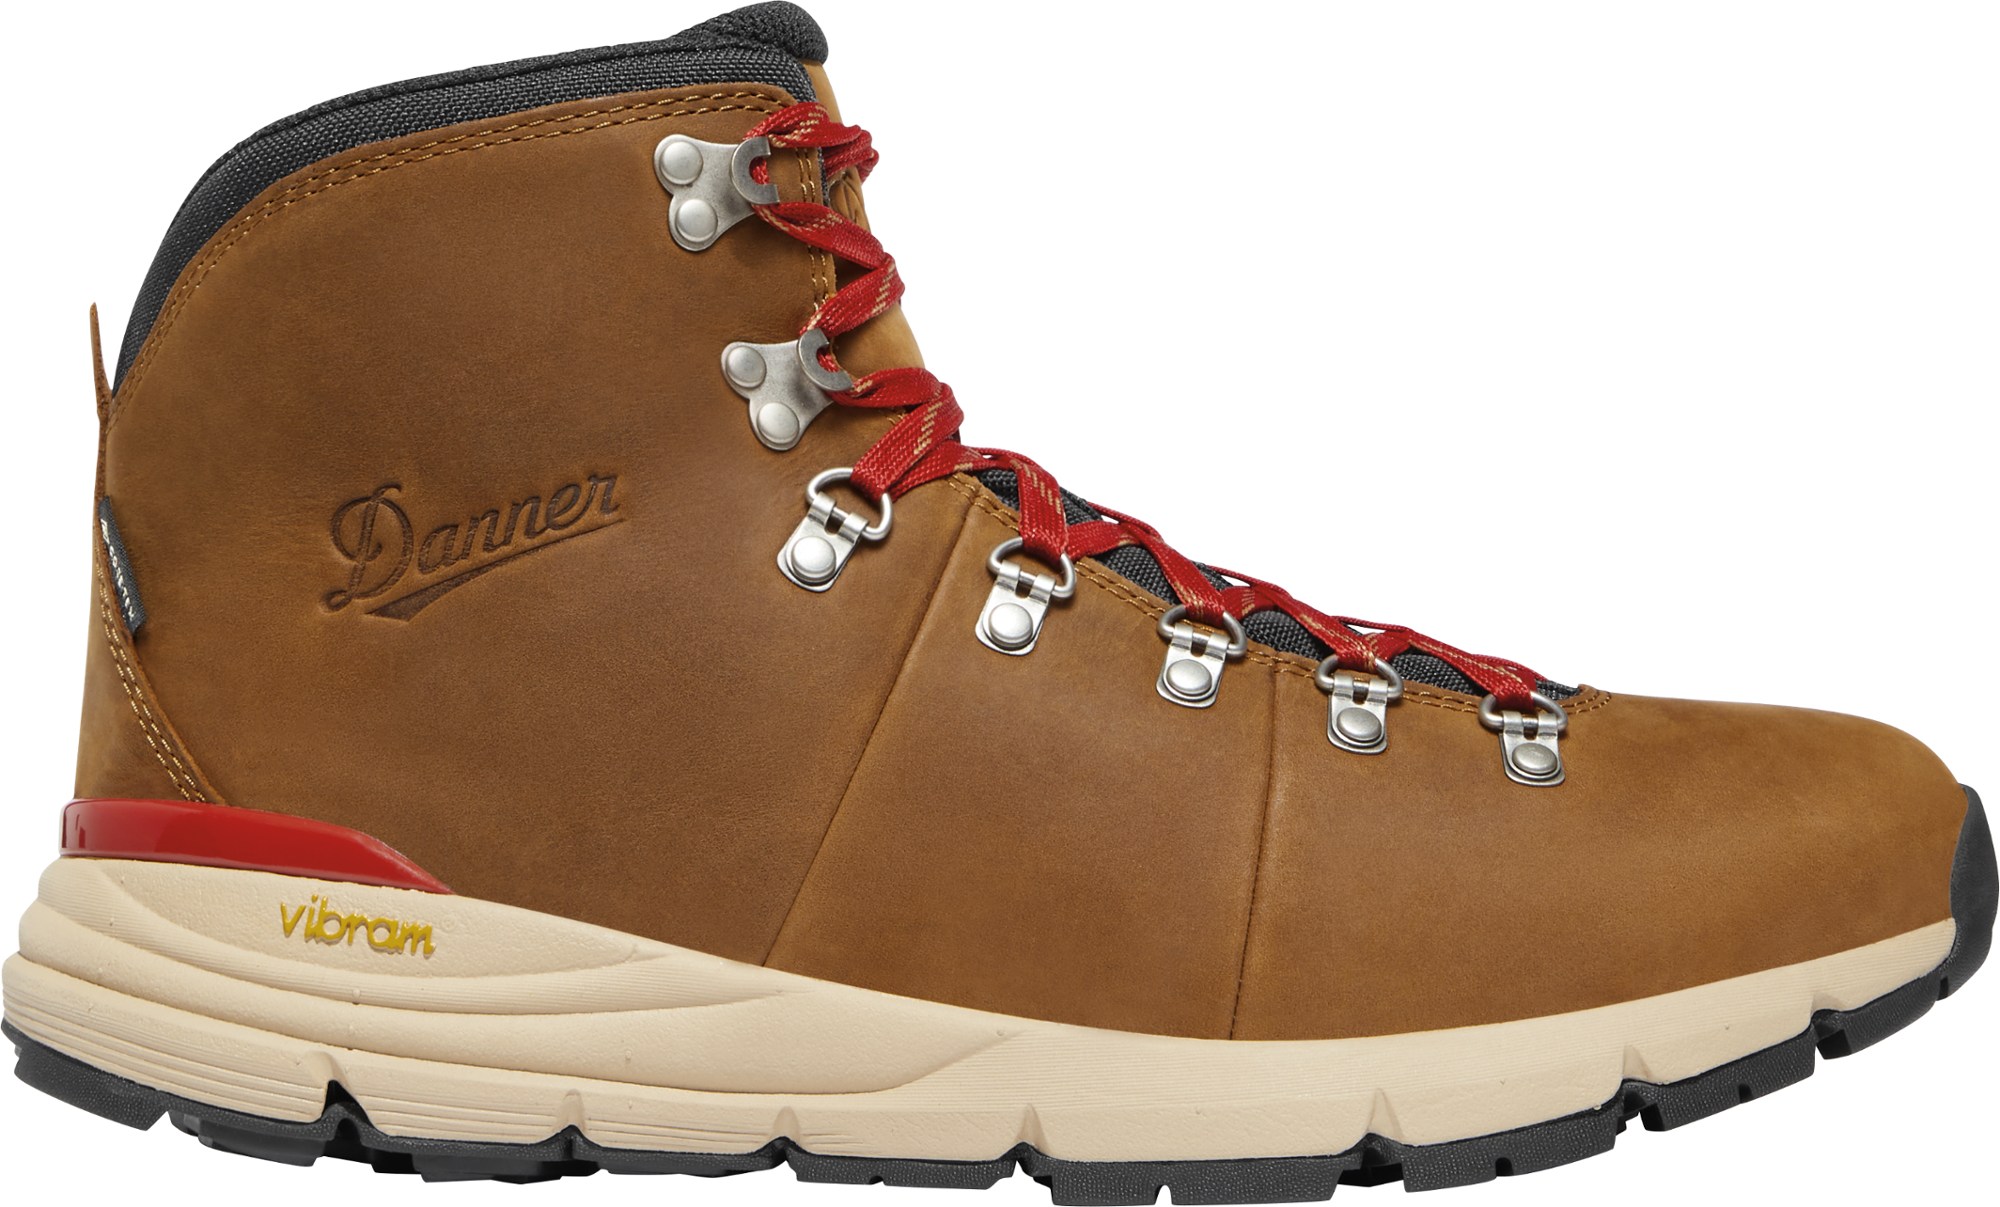 Походные ботинки Mountain 600 Leaf GORE-TEX — мужские Danner, коричневый